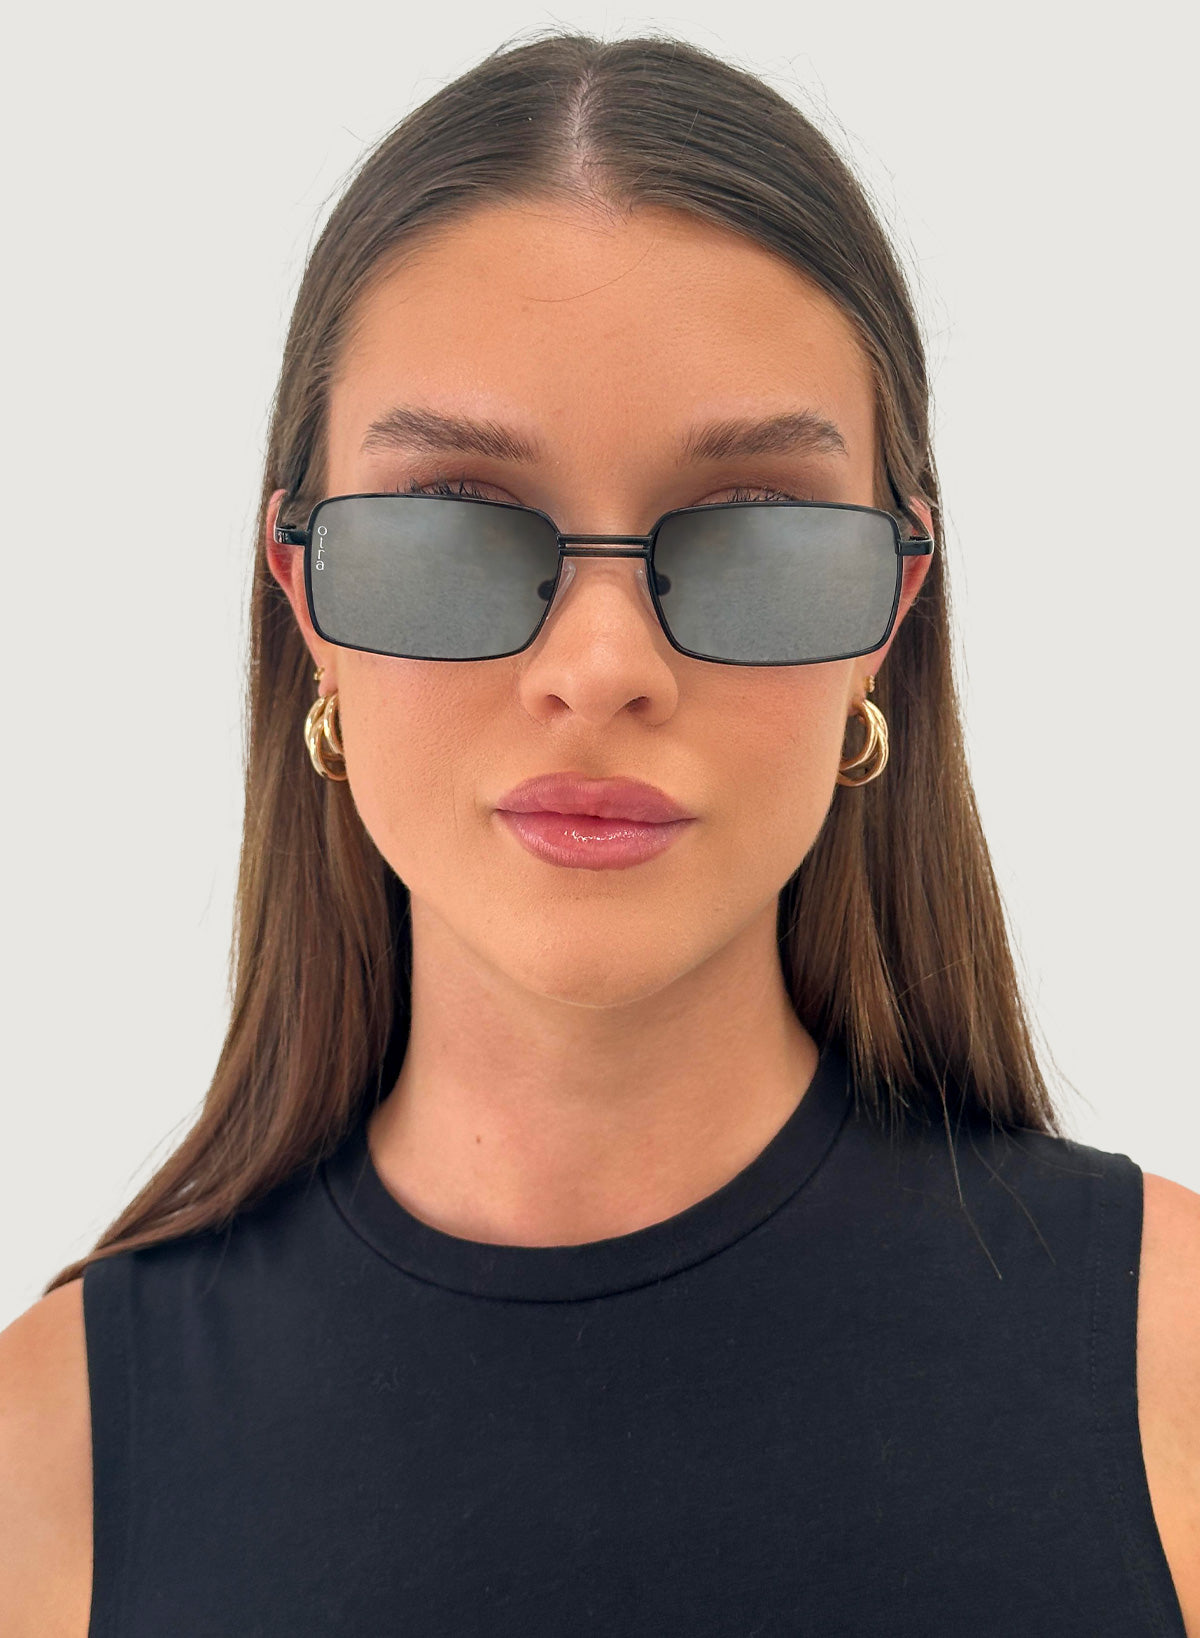 Model wearing Ila small rectangle sunglasses in black